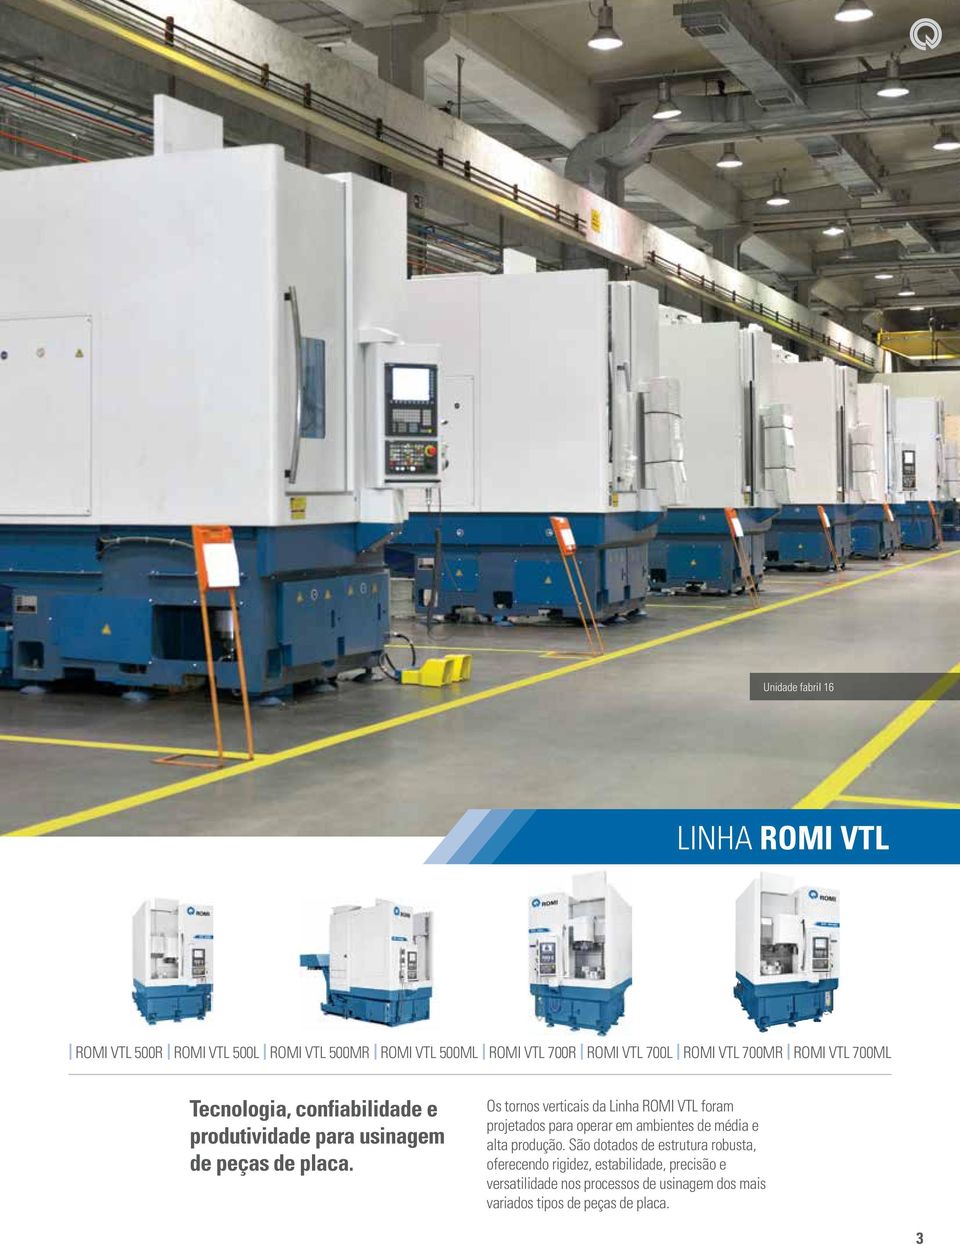 Os tornos verticais da Linha ROMI VTL foram projetados para operar em ambientes de média e alta produção.